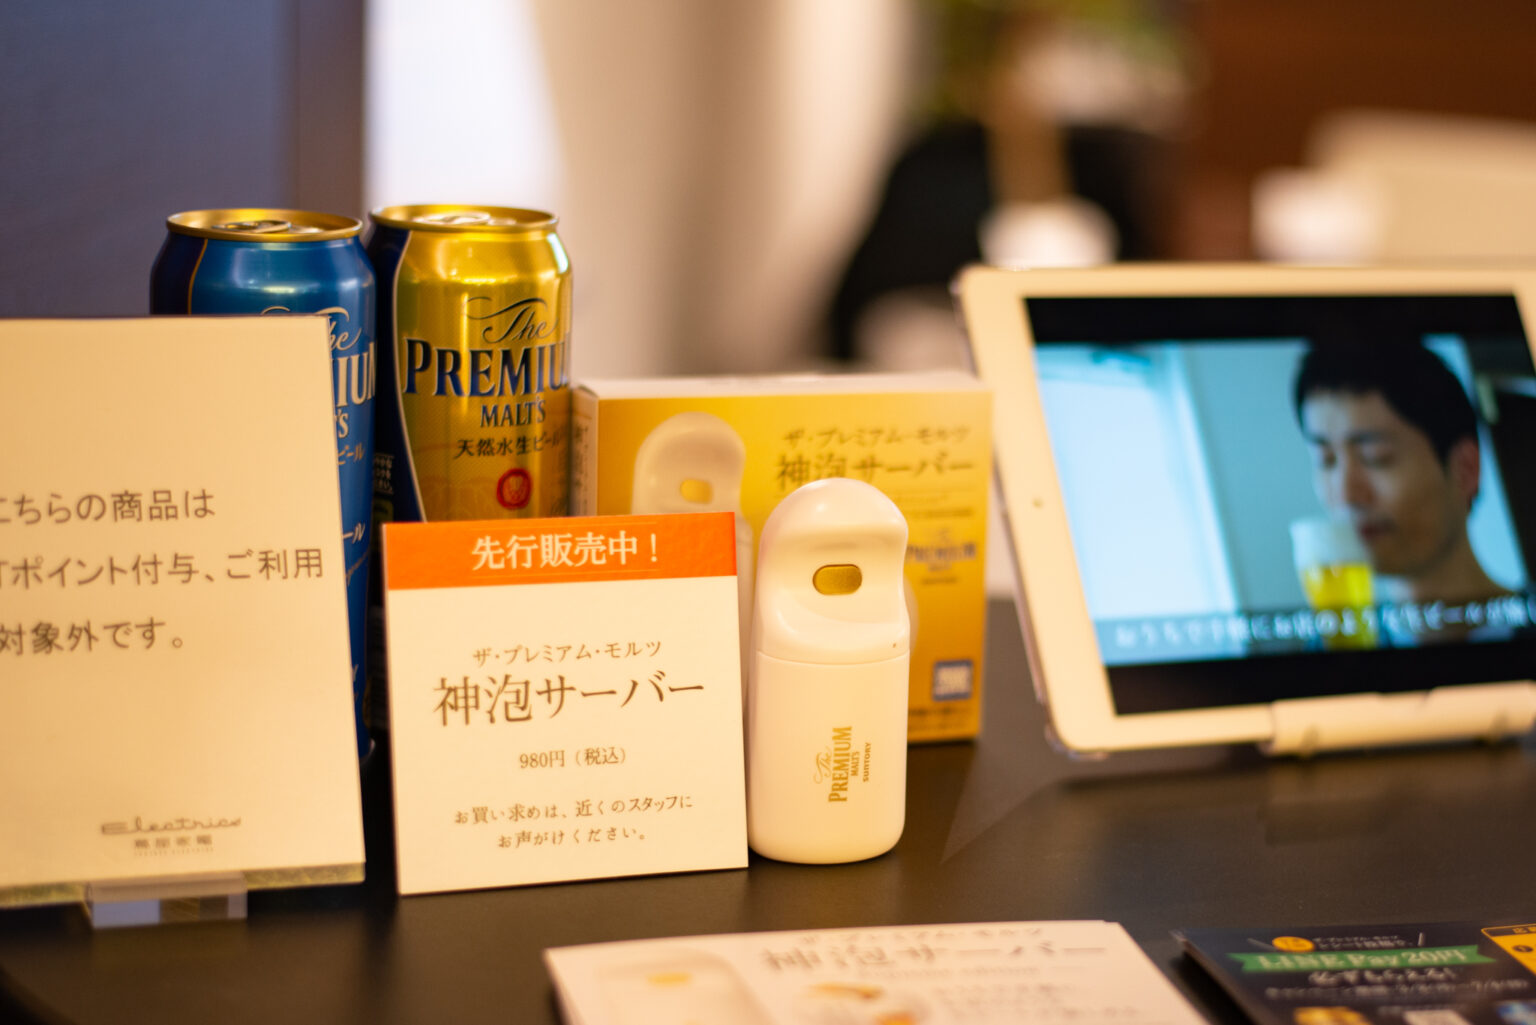 4月から発売される「神泡サーバー」980円。「神泡サーバー」を使うと、自宅でクリーミーな泡がのったビールを味わうことができます。